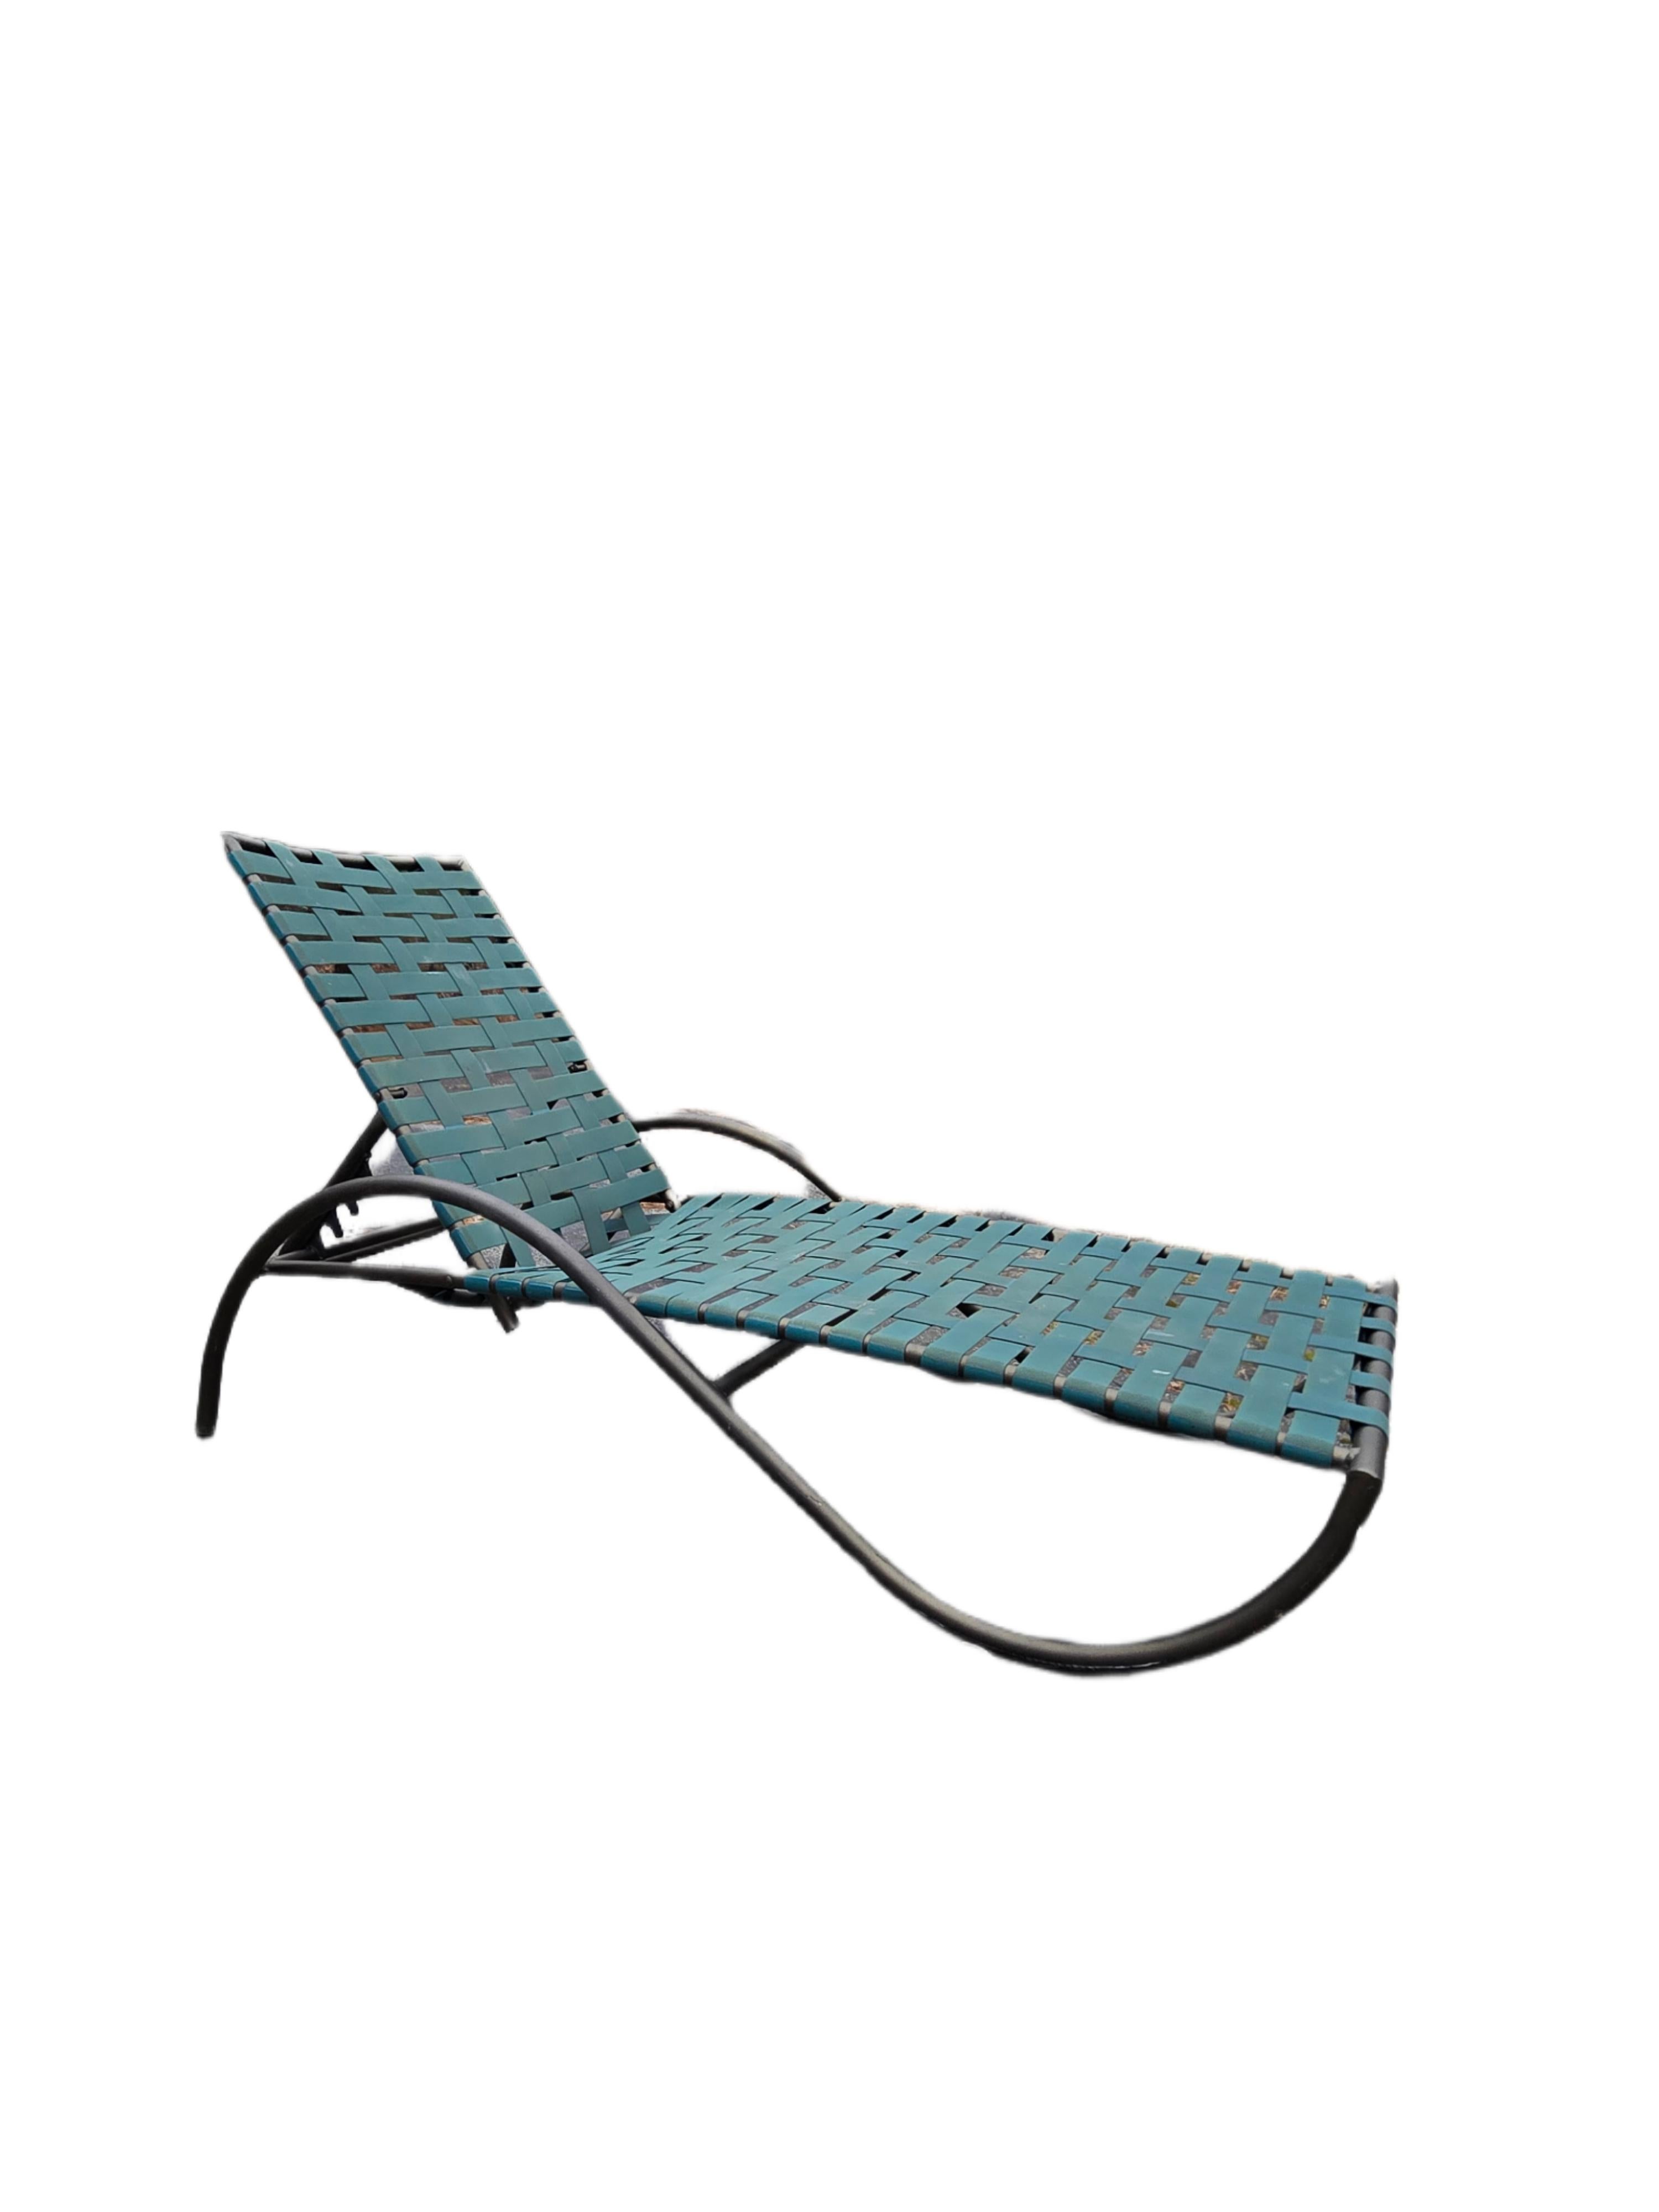 Les chaises longues en treillis de Brown Jordan sont parfaites au bord de la piscine, sur le patio ou sur la terrasse. Cet ensemble complet de 8 pièces vous offre de nombreuses possibilités d'arrangements en fonction de vos besoins en matière de